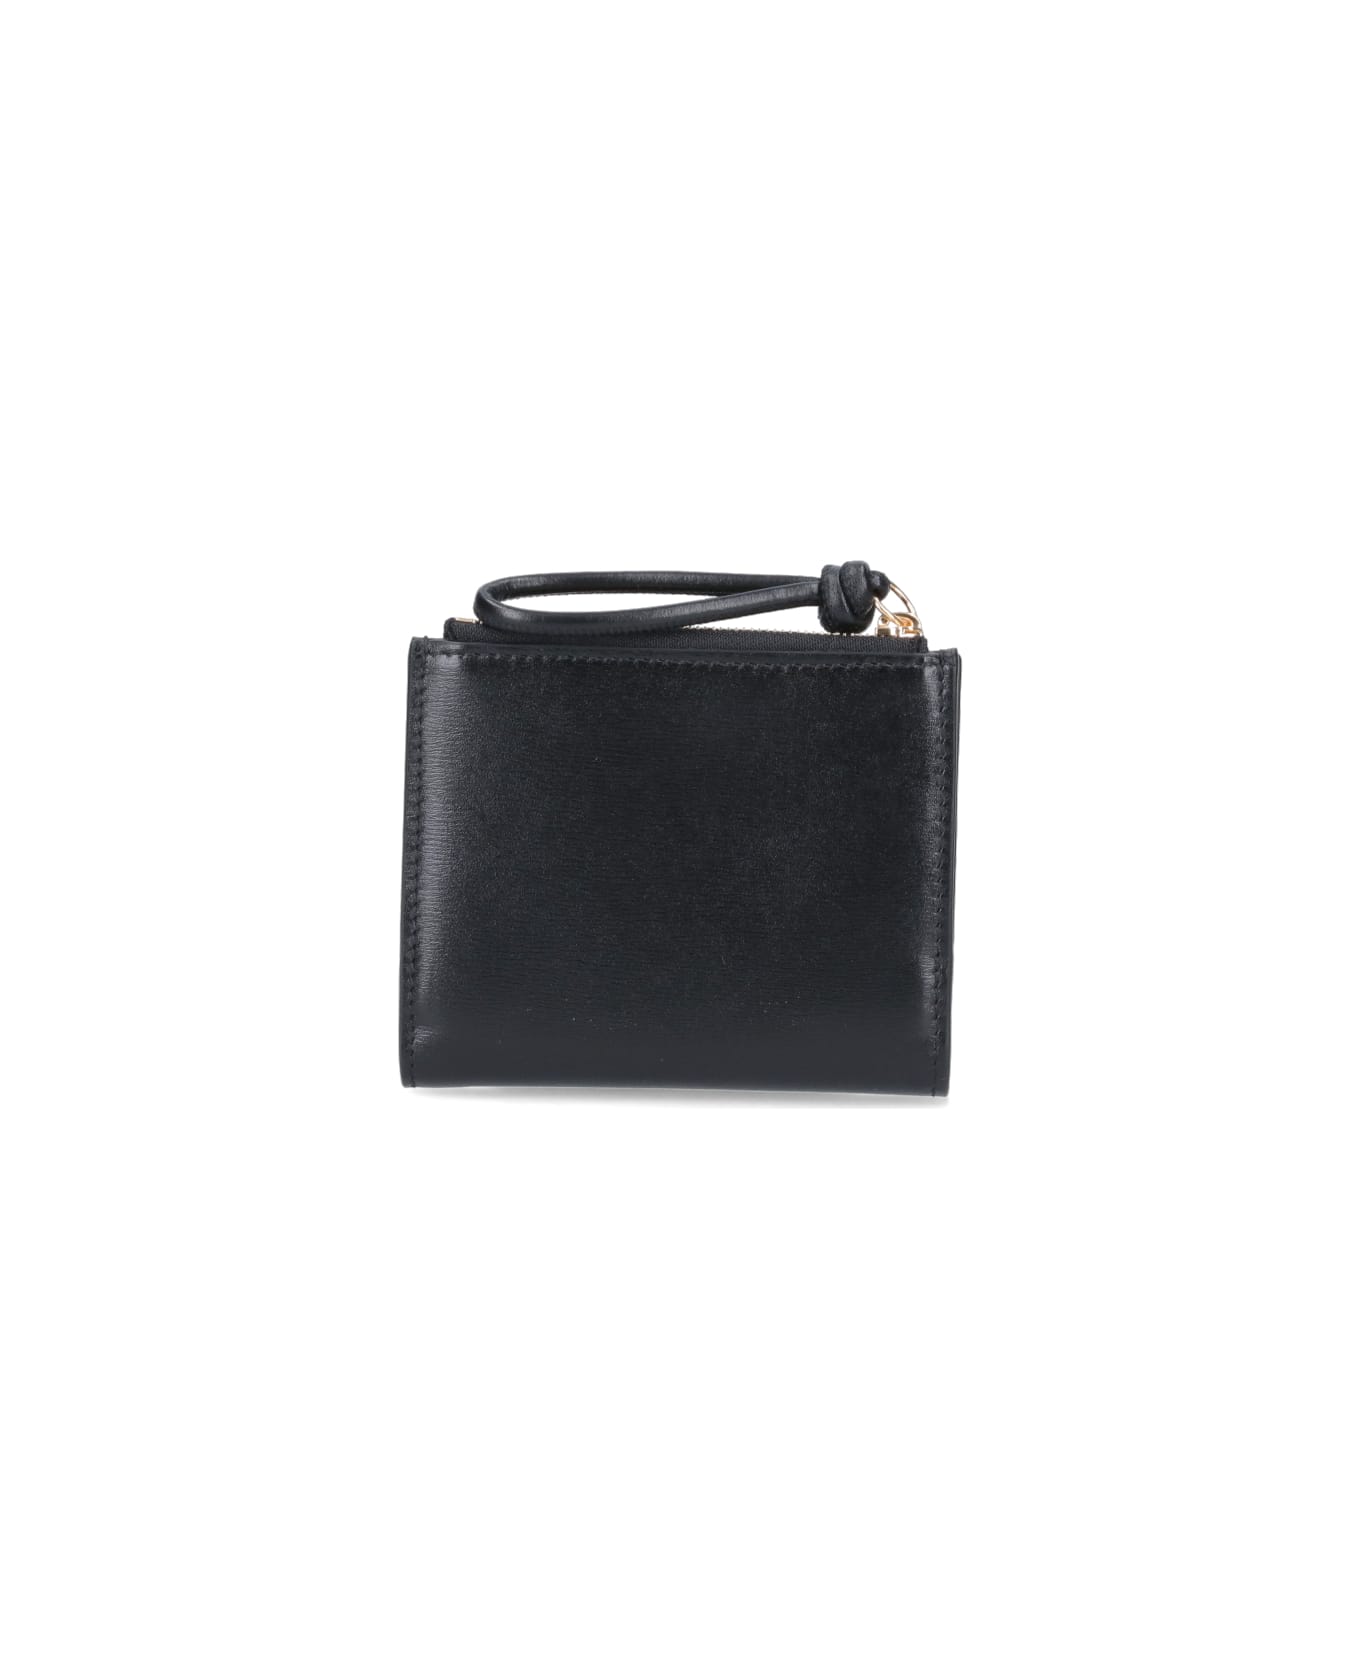 Jil Sander Black Calf Leather Wallet - Black